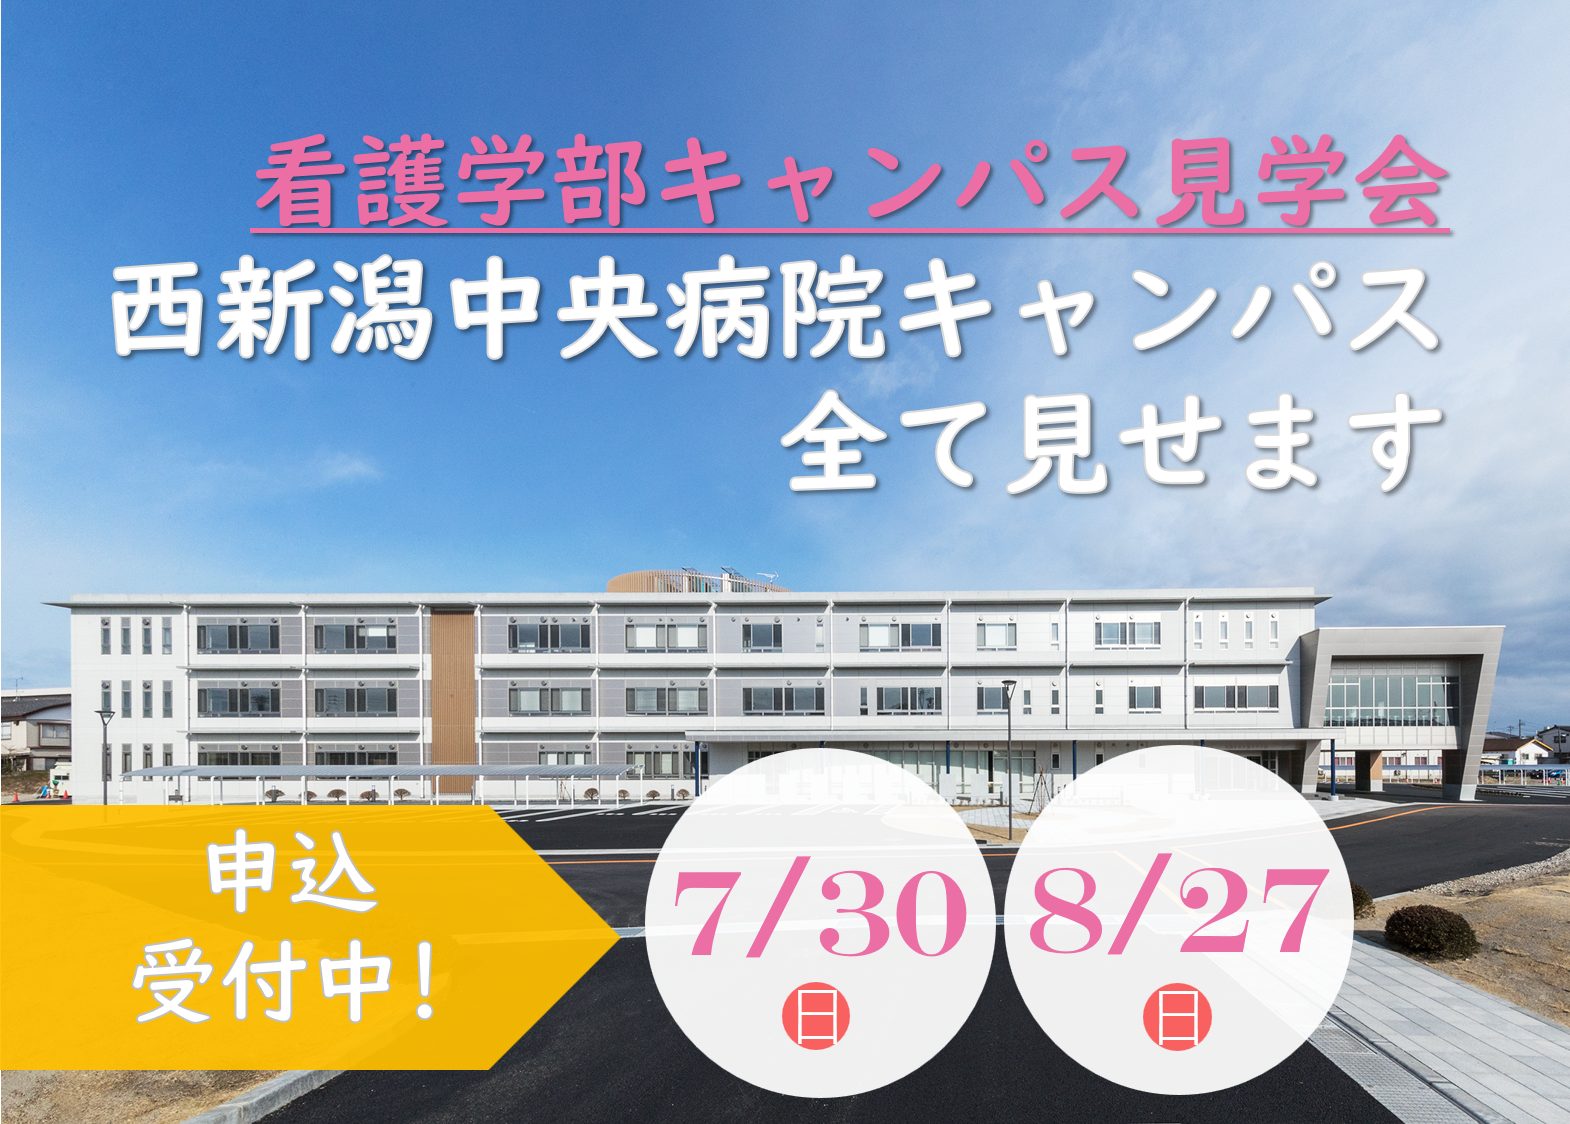 看護学部 西新潟中央病院キャンパス見学会を開催します